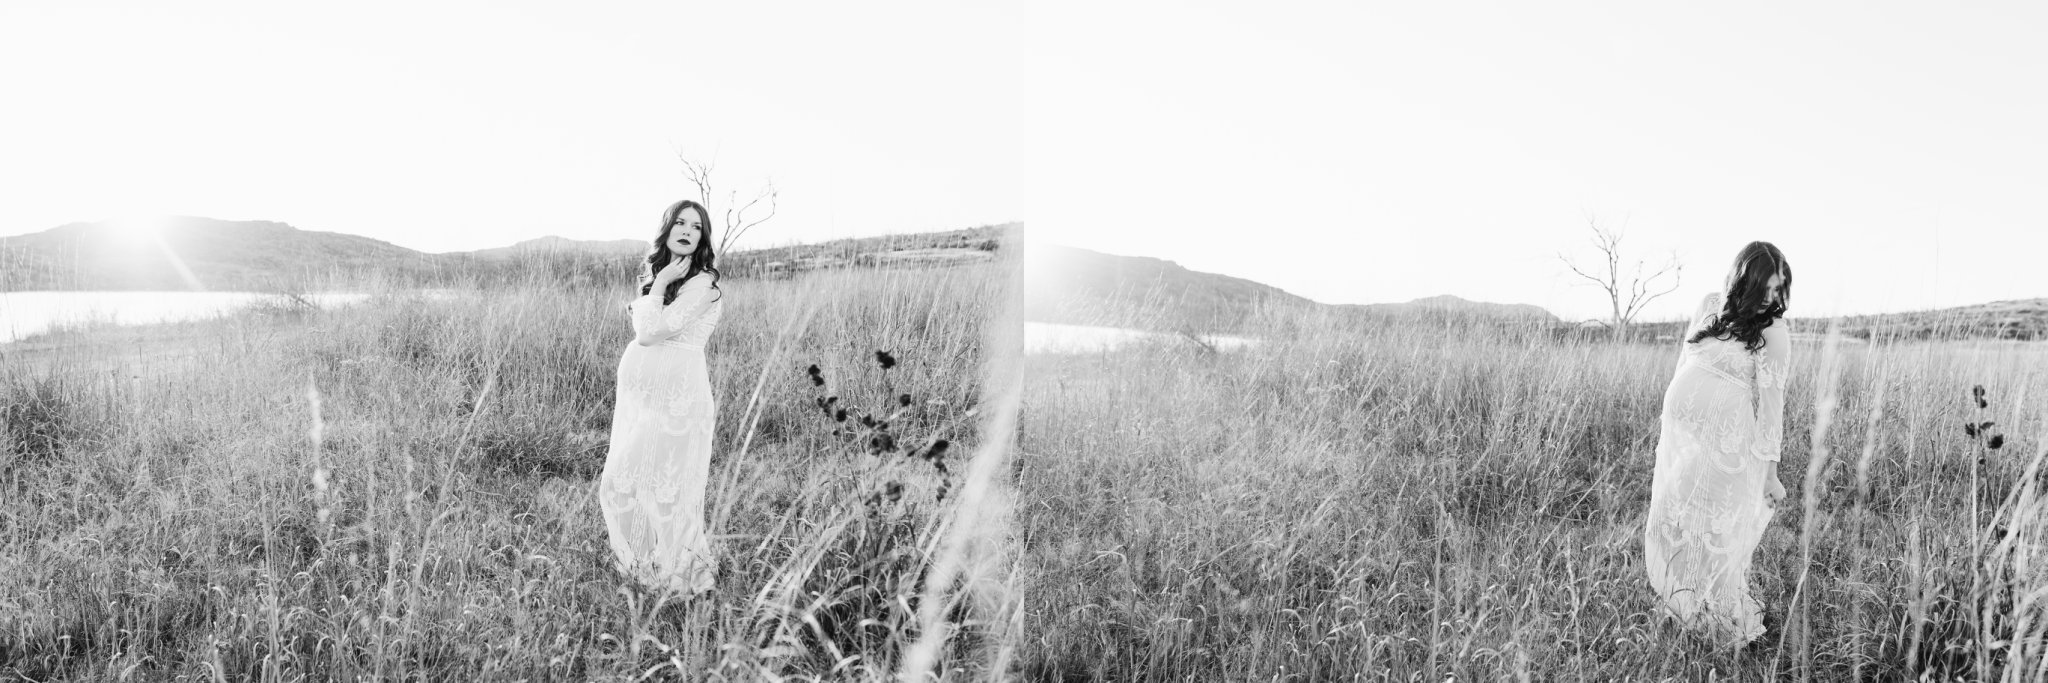 oklahoma-maternity-photographer-mount-scott-wichita-mountains-black-white.jpg